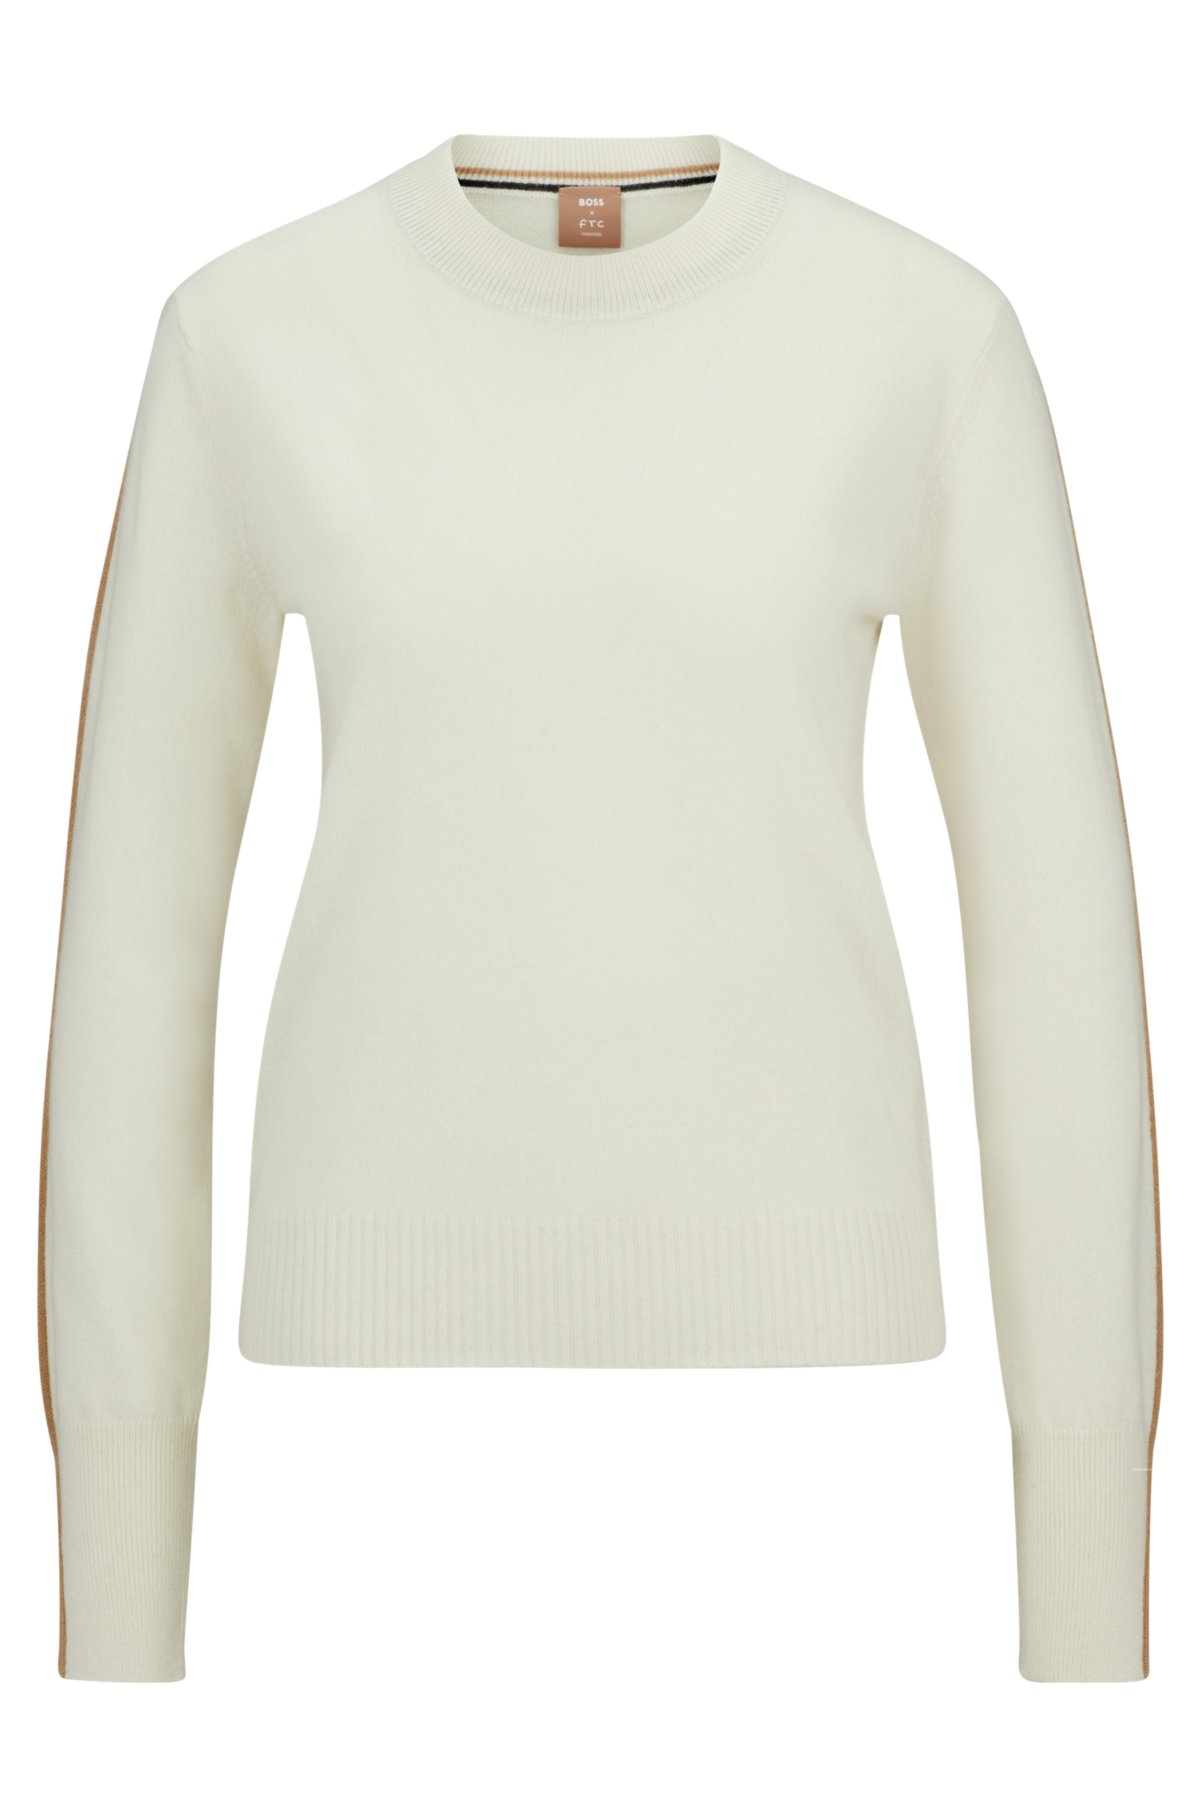 Soft White, Cashmere Crew Neck Sweater